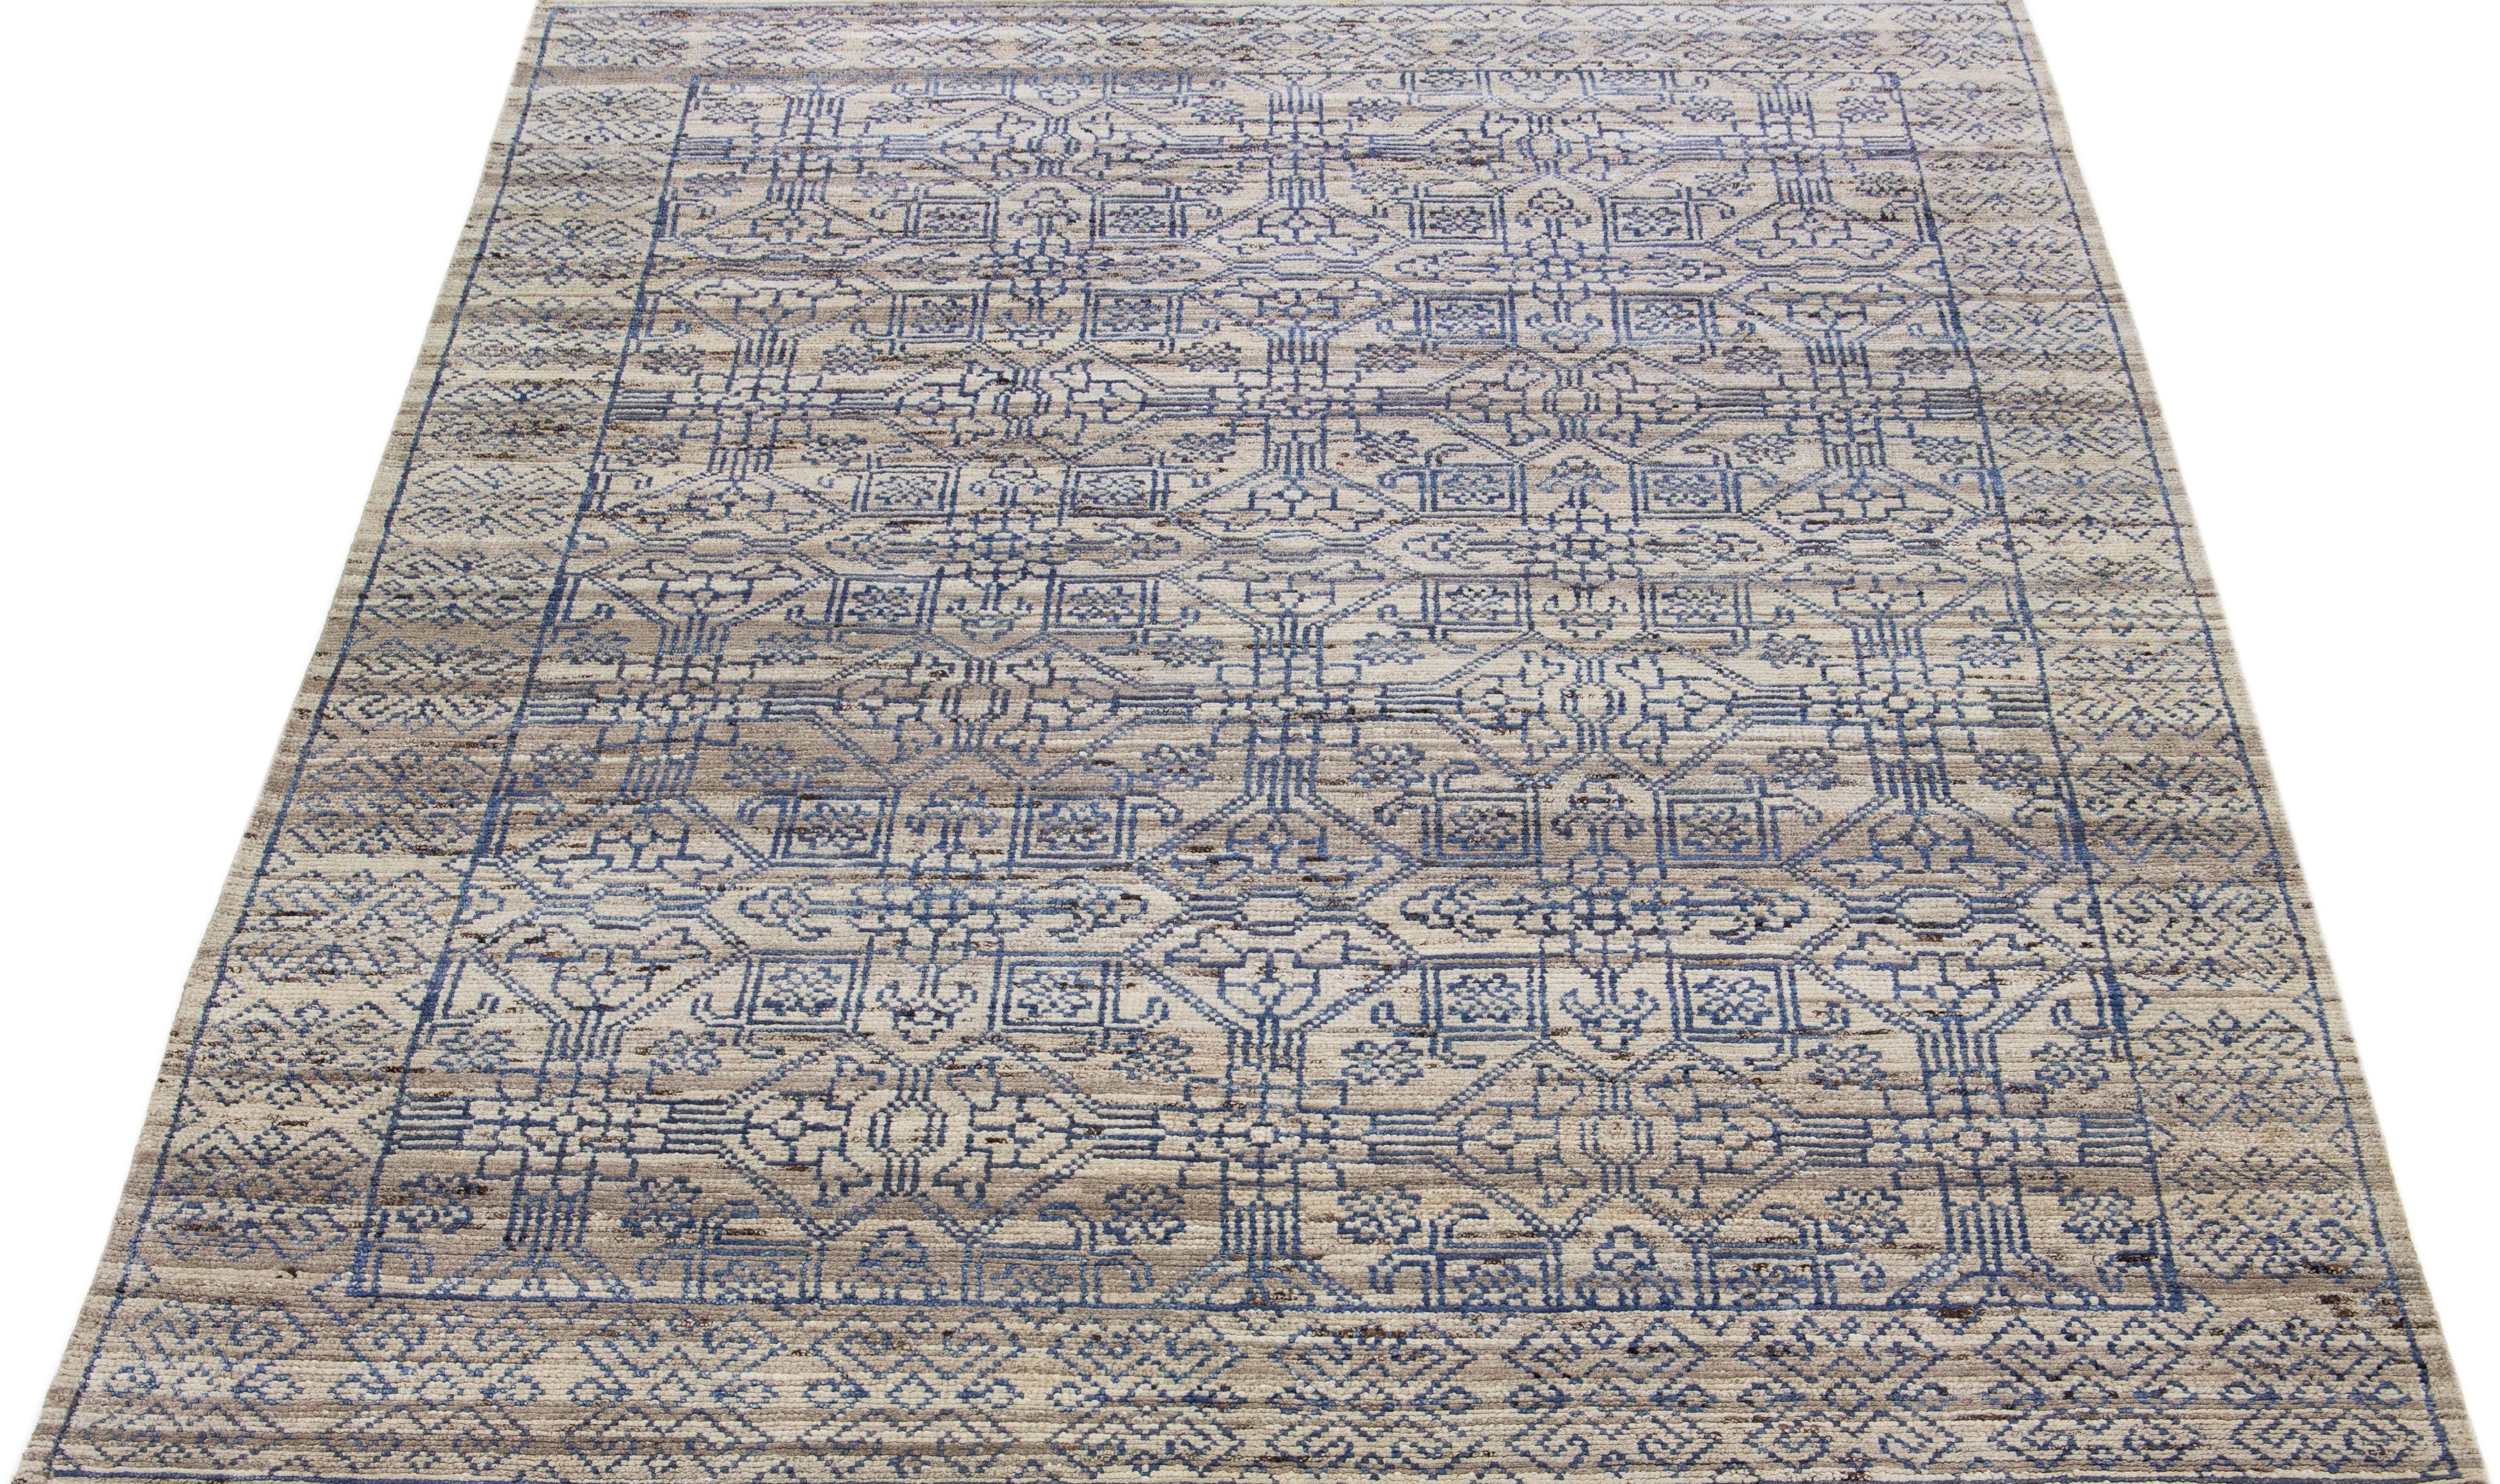 Die Artisan-Linie von Apadana ist eine elegante Möglichkeit, einem Raum eine auffallend antike Ästhetik zu verleihen. Diese Teppichserie ist ausgesprochen einzigartig und zeigt, wie ein antiker Teppich aussehen kann. Dieser maßgefertigte Teppich